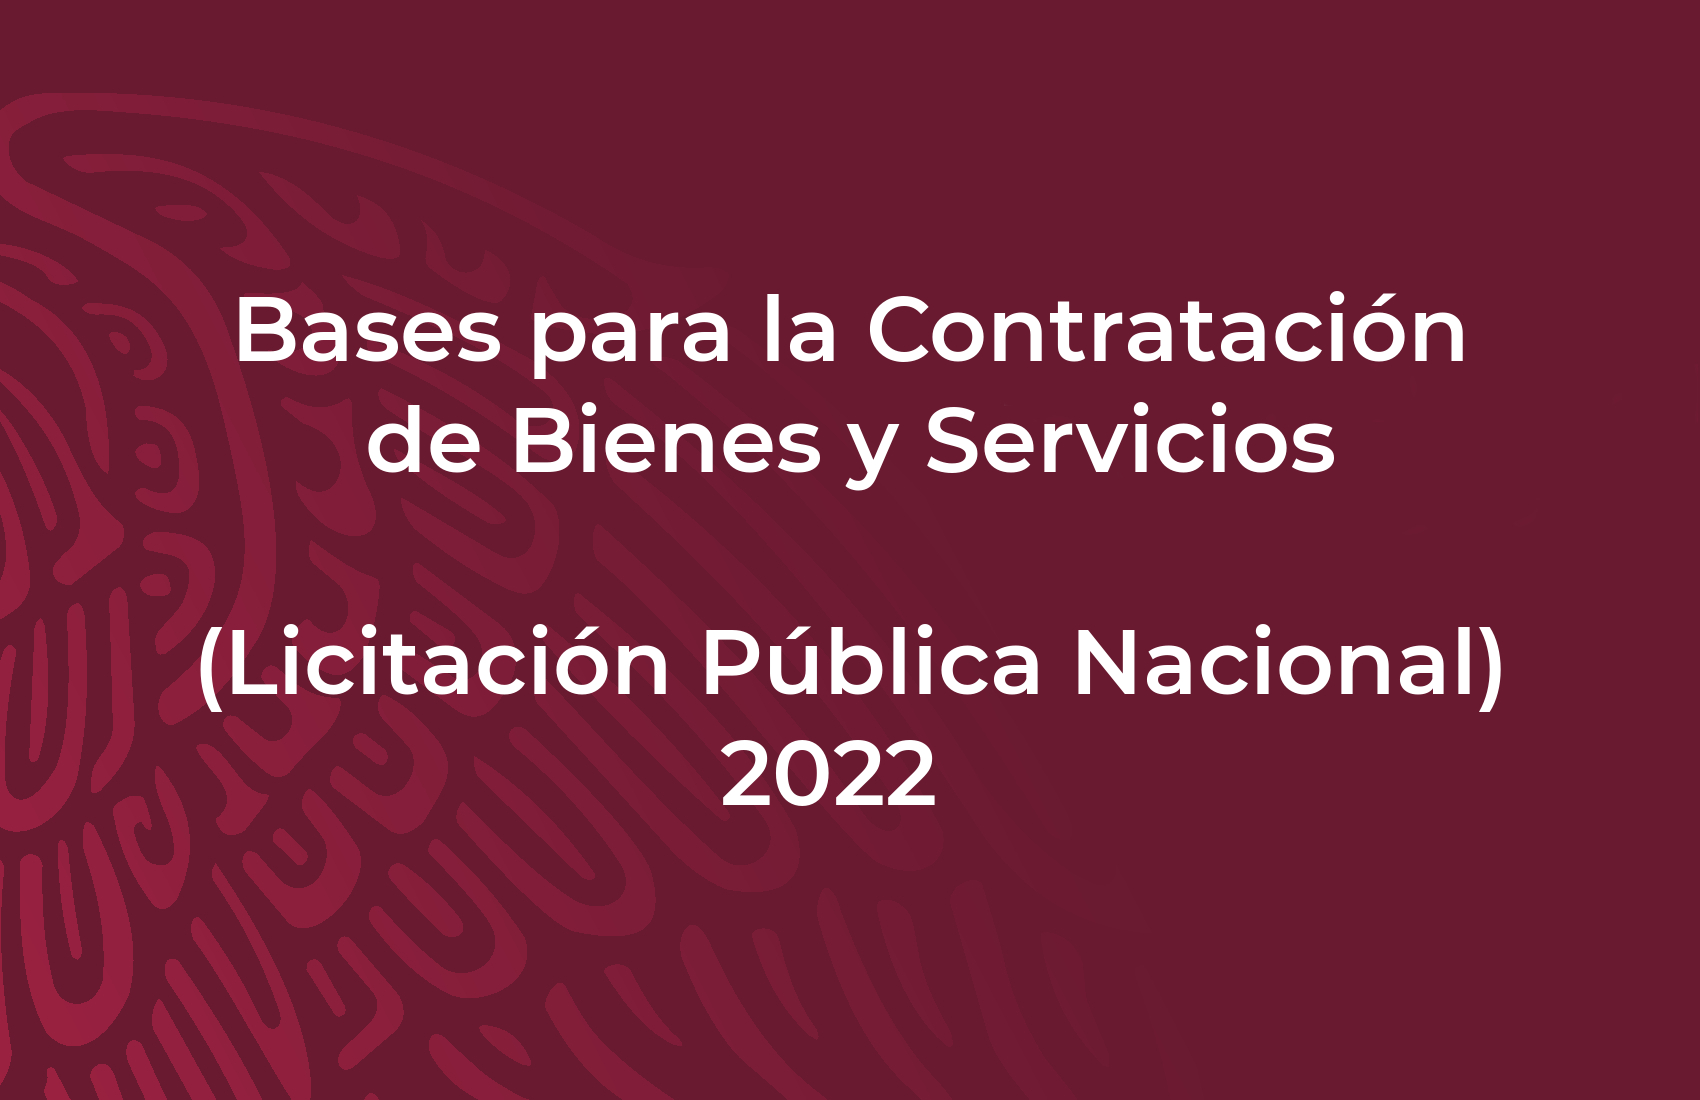 Bases para la Contratación de Bienes y Servicios, Licitación Pública Nacional 2022